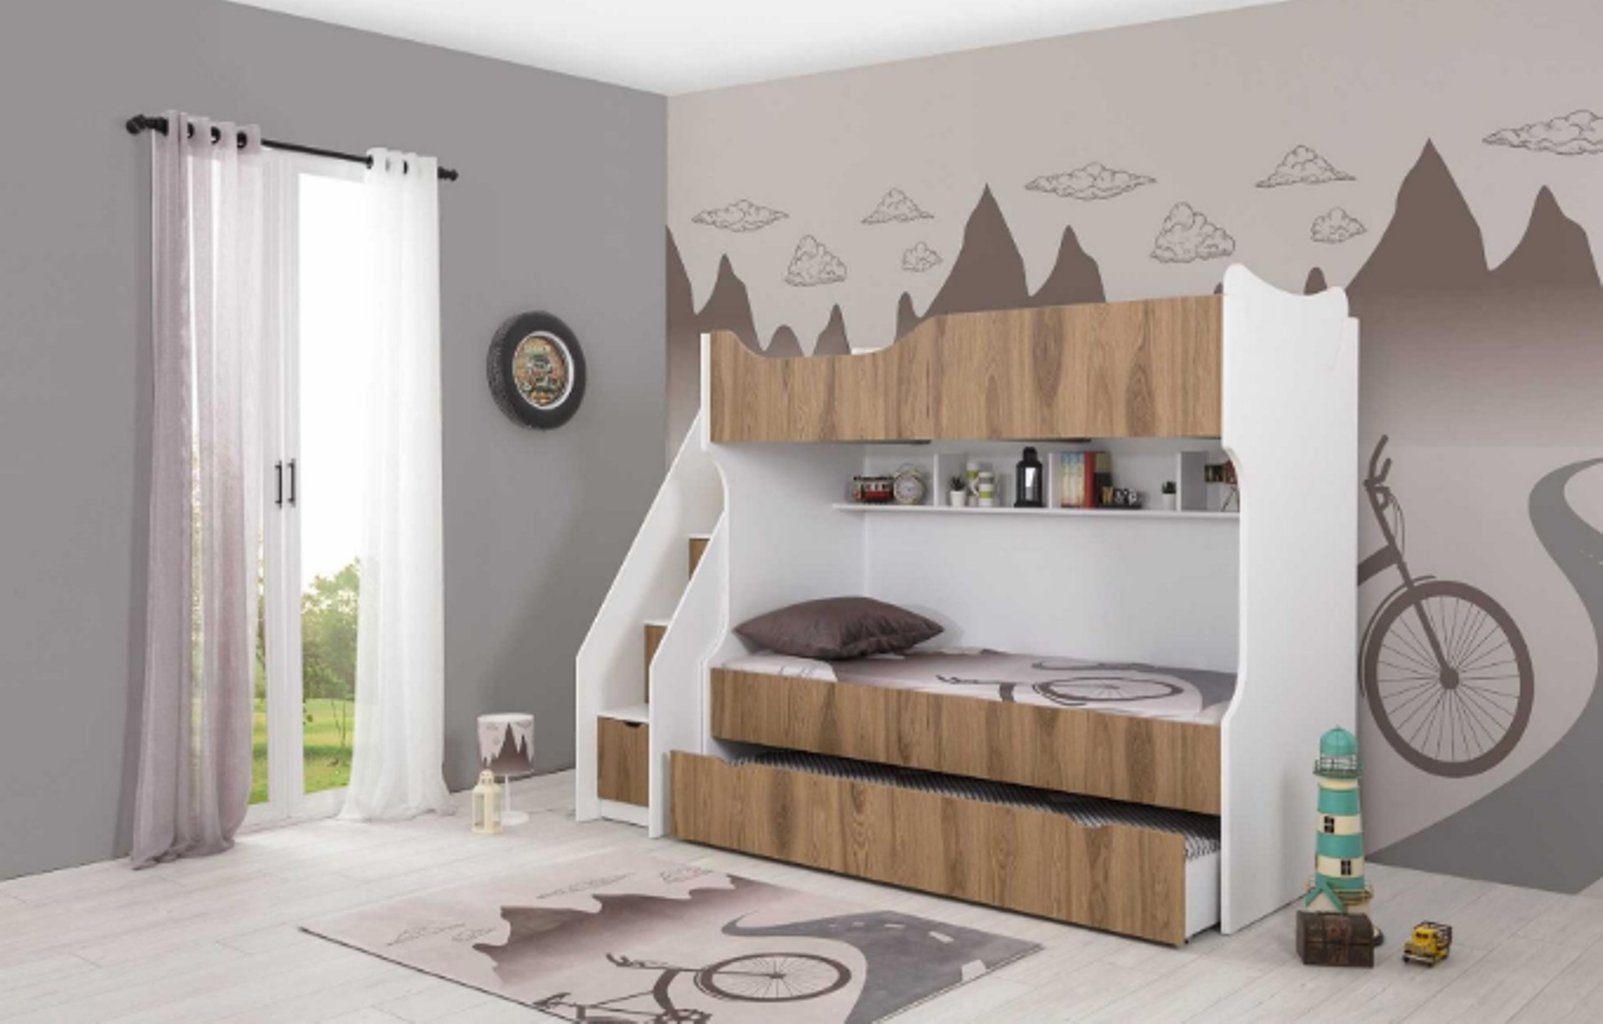 JVmoebel Kinderbett Kinderbett Etagenbett Europa Made Moderne Garnitur Kinder Bett Kindermöbel in (1-tlg., Weiß Bett)